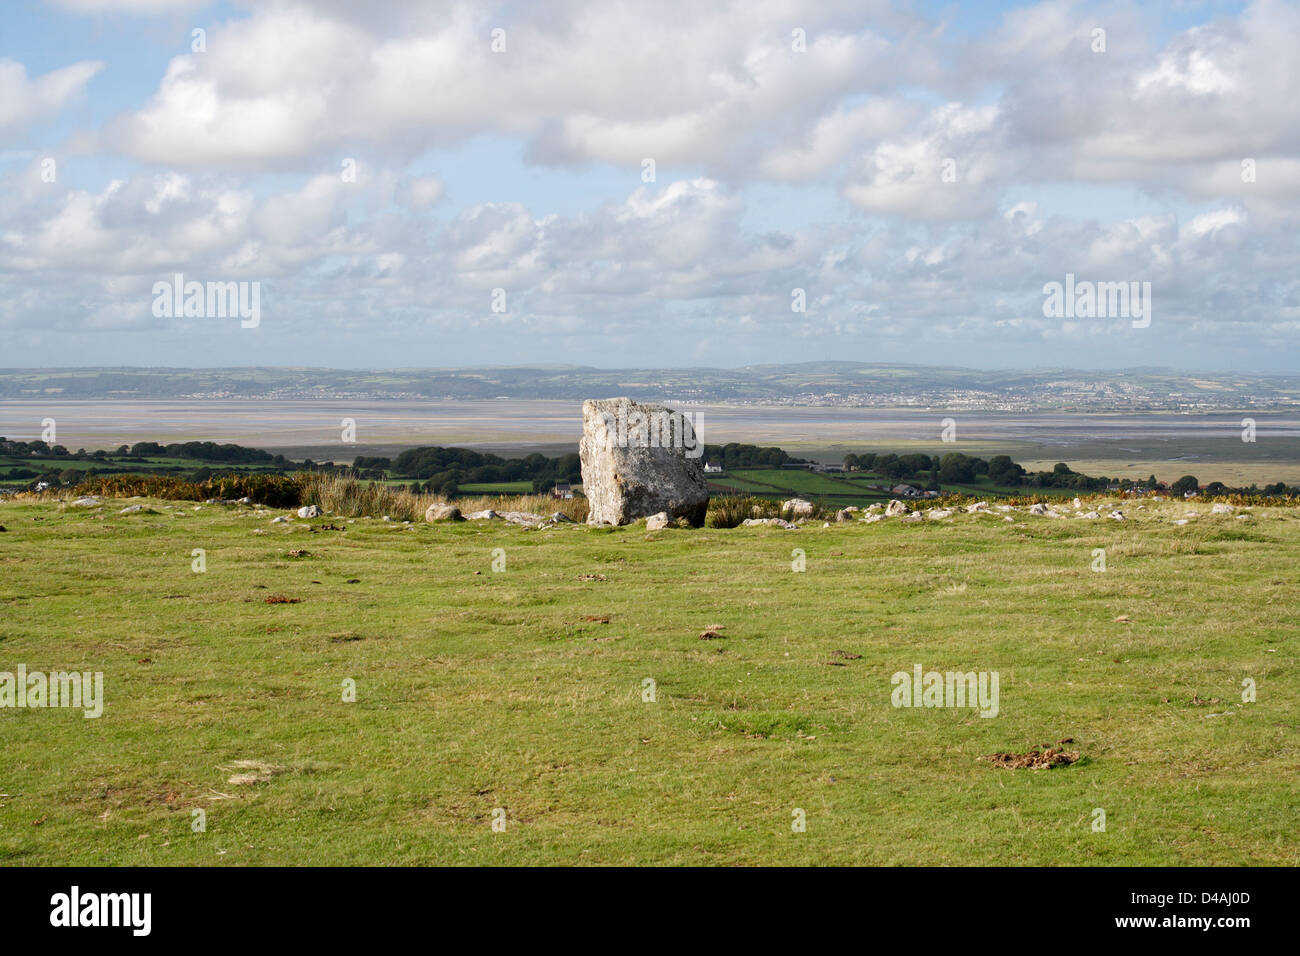 Arthurs Stone chambre funéraire près de Reynoldston sur la péninsule de Gower au pays de Galles Royaume-Uni, paysage gallois zone de campagne britannique de beauté naturelle Banque D'Images